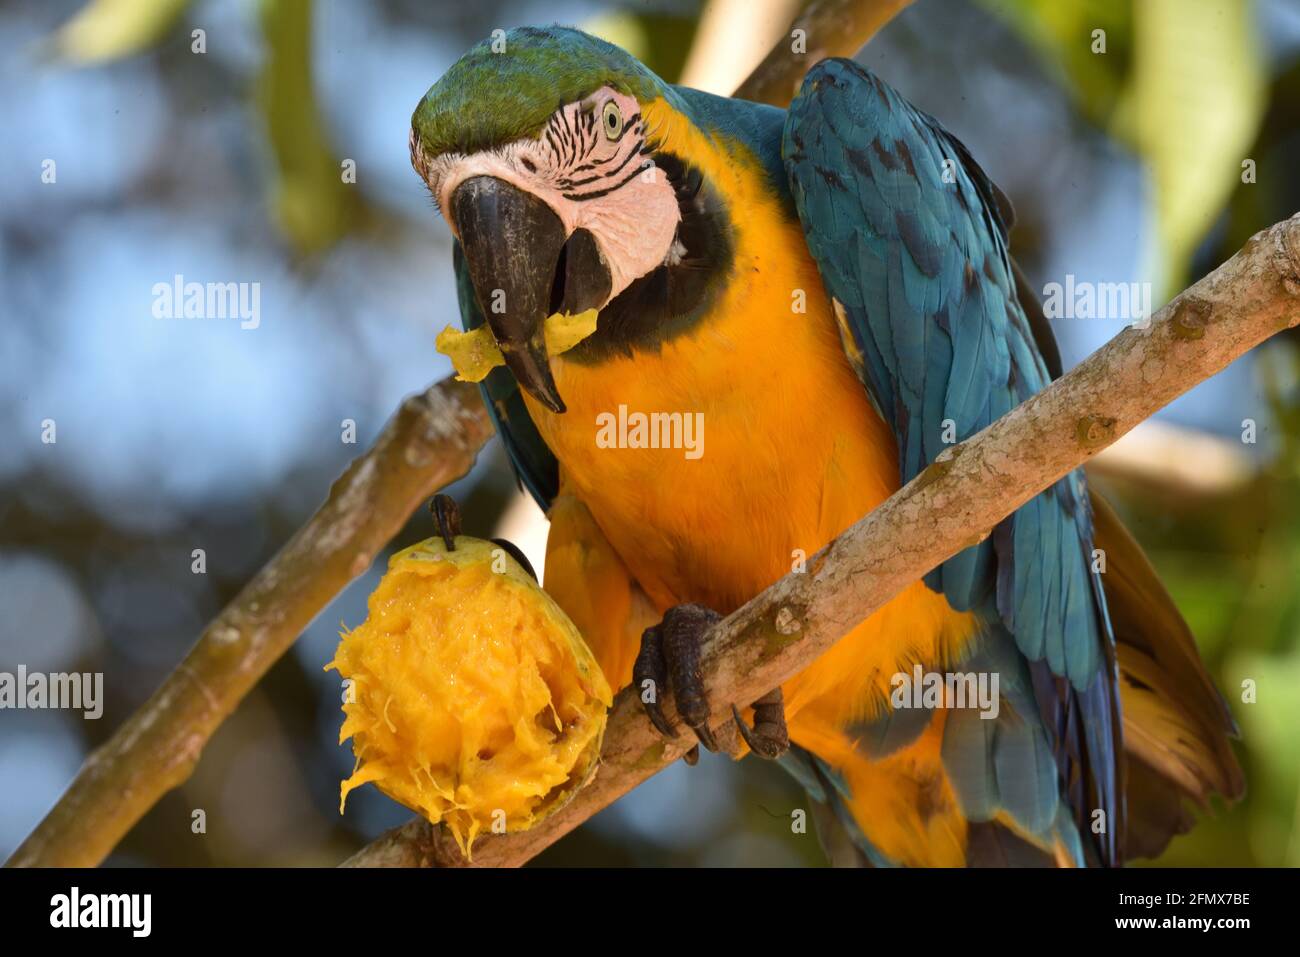 Arara-canindé comendo um manguito - Floresta Amazônica brasileira Stock Photo